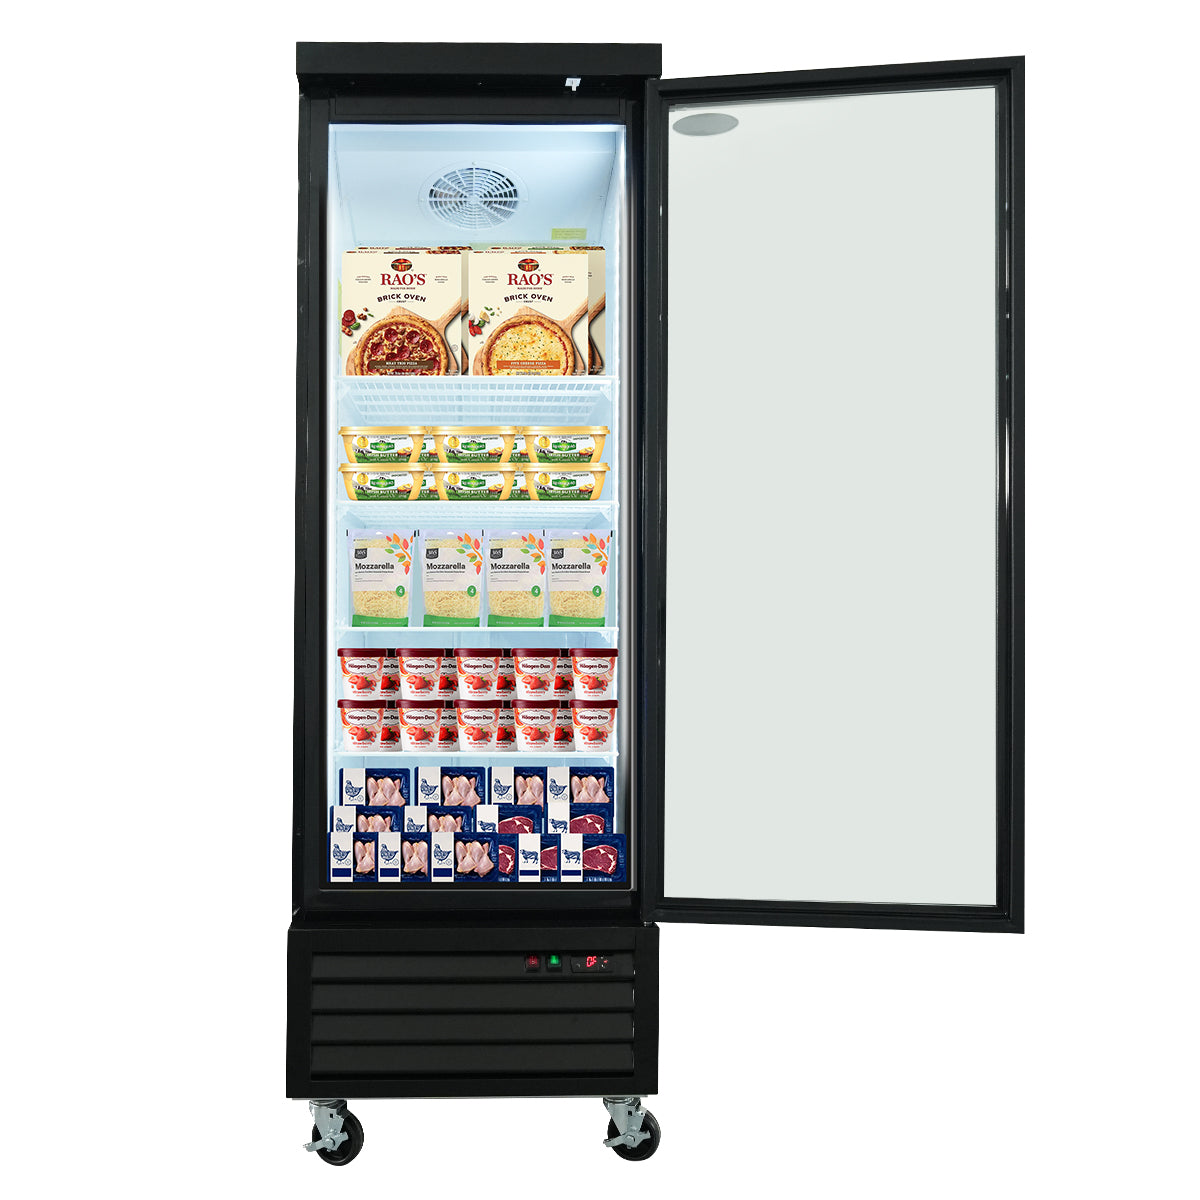 ORIKOOL SD690FT 27" Single Swing Glass Door Merchandiser Freezer 19.2 cu.ft. Commercial Freezer, Black